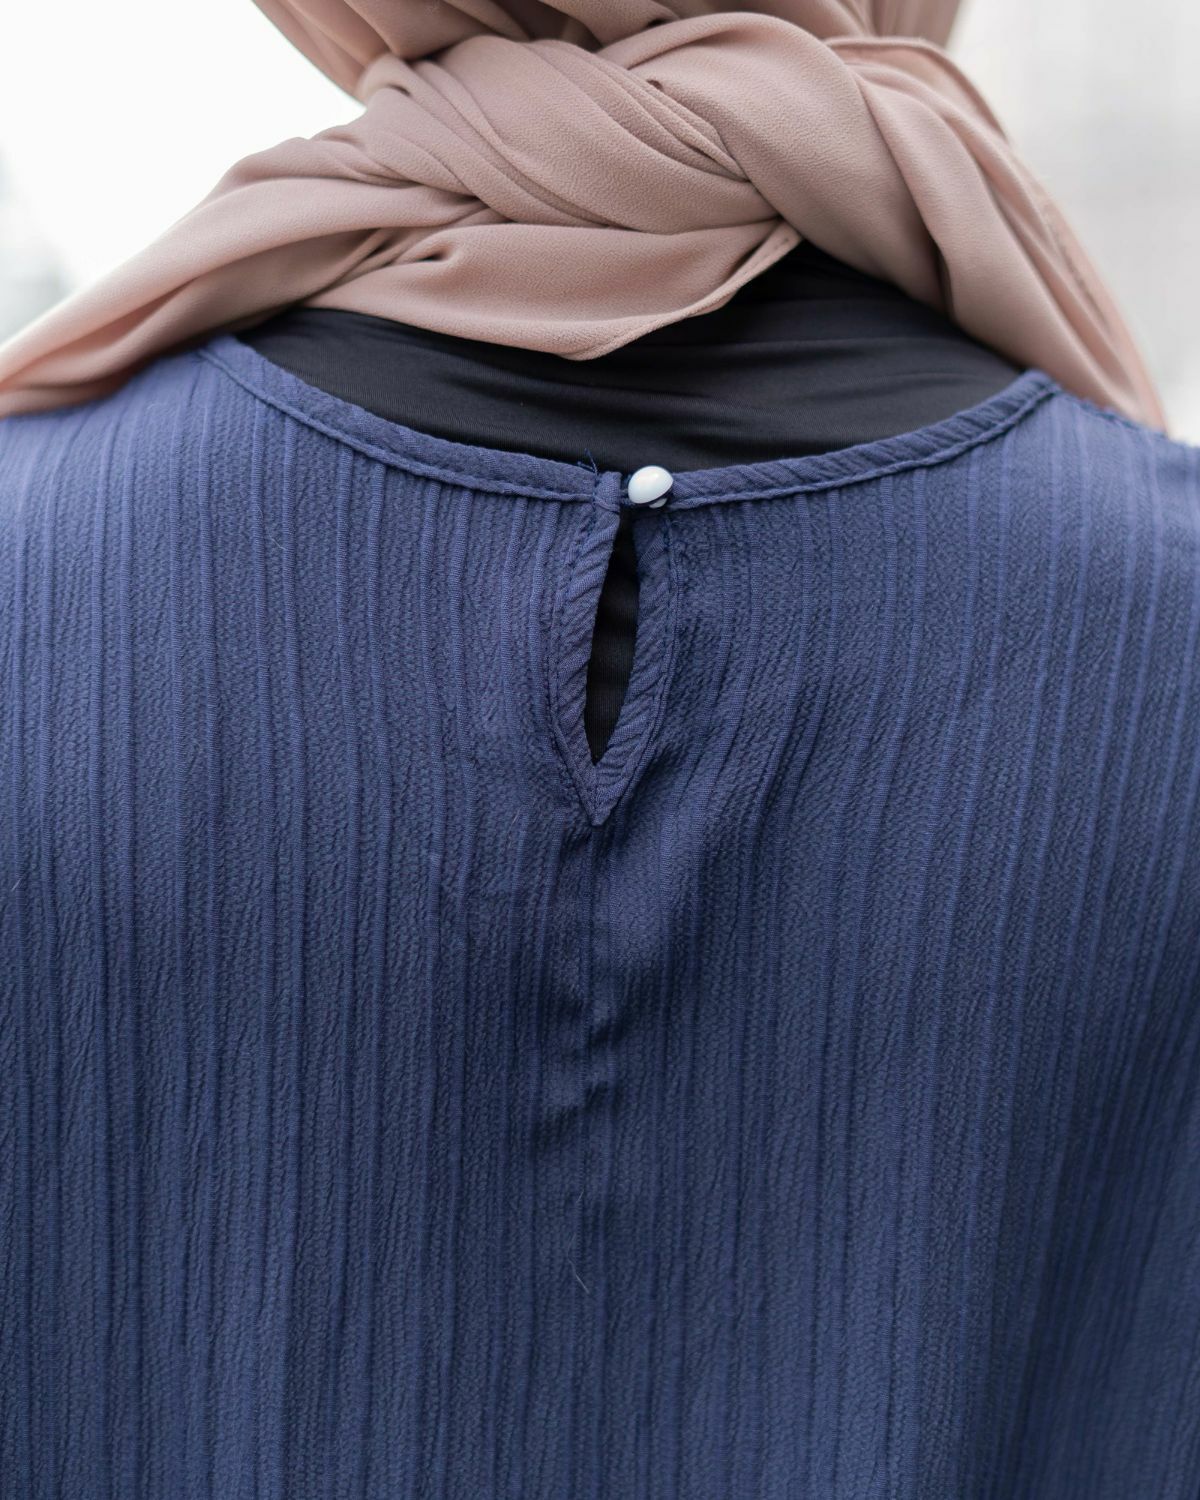 haura-wear-ferra-kaftan-midi-dress-blouse-shirt-long-sleeve-baju-muslimah-baju-perempuan-shirt-blouse-baju (7).jpg